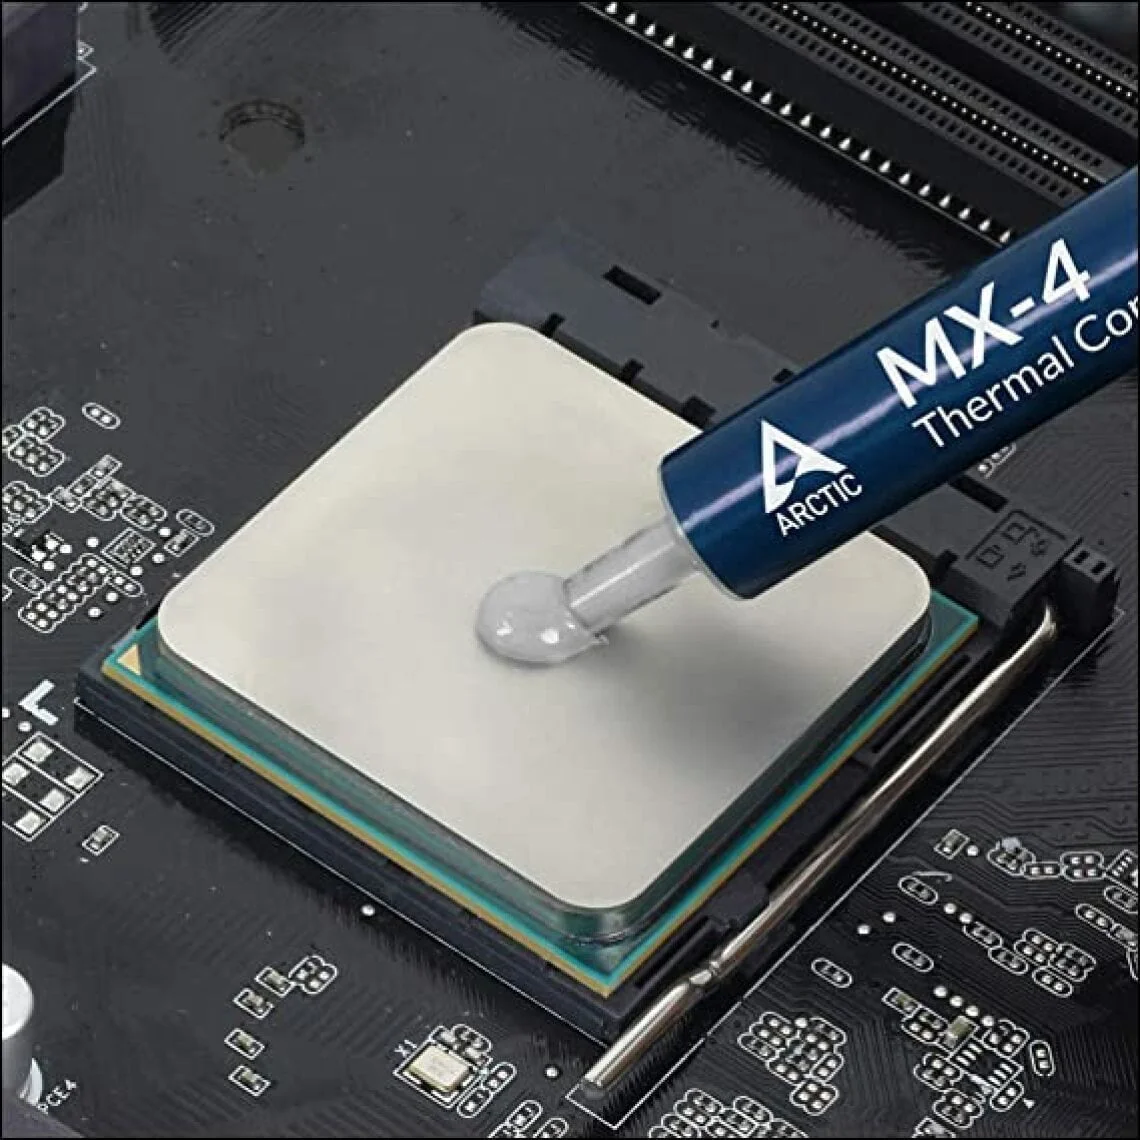 ARCTIC MX-4 (4 g) - Pâte thermique de haute performance pour tous les  processeurs (CPU, GPU - PC, PS4, XBOX), conductivité thermique très élevée,  longue durée de vie, application sûre, non-conductrice 